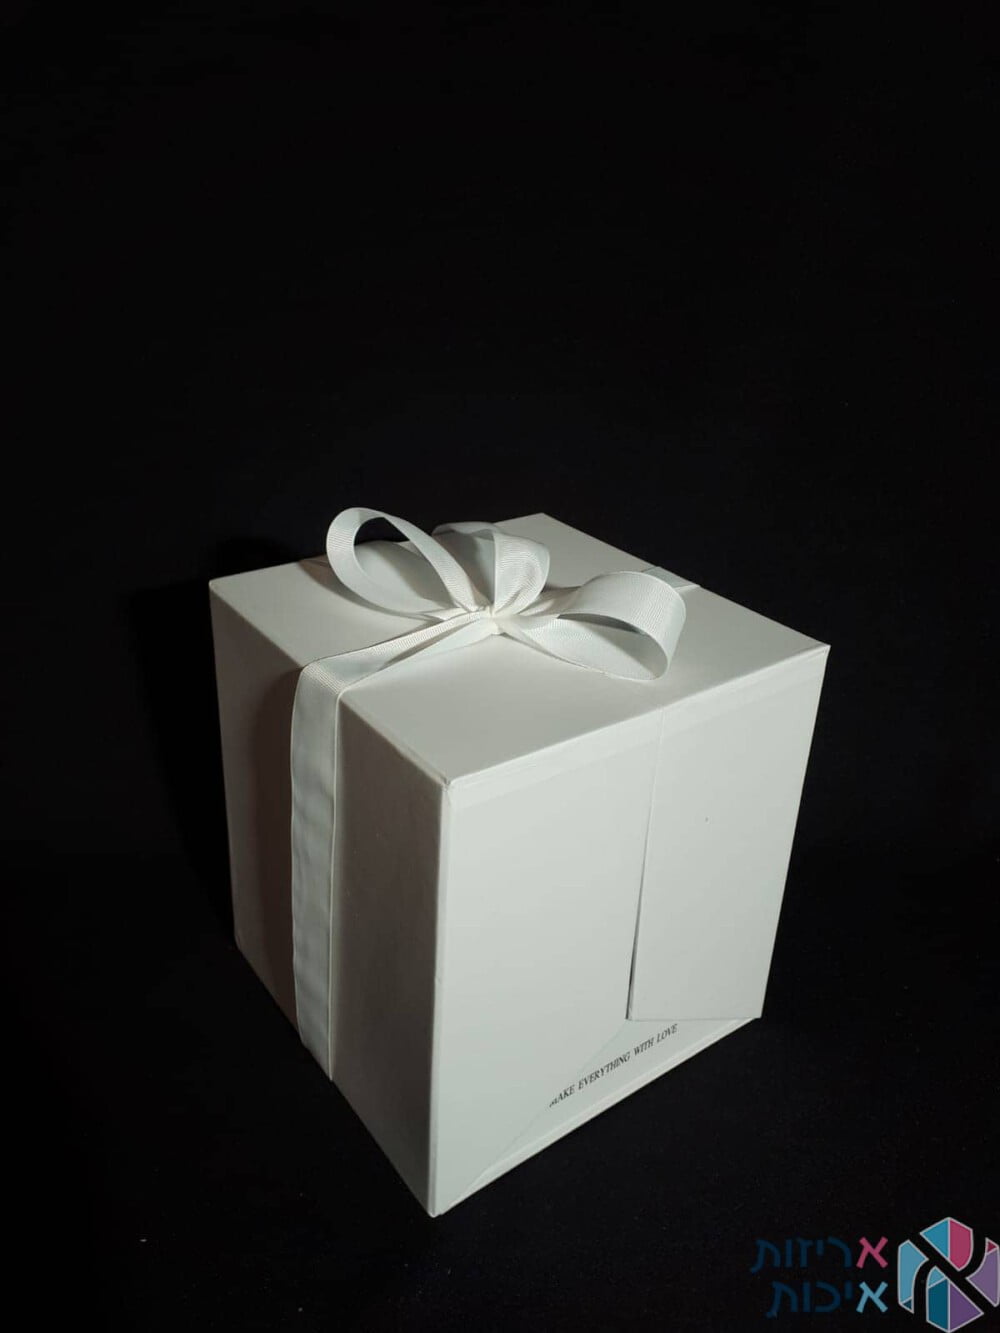 קופסאות לפרחים - קופסאות הפתעה נפתחות עם סרט סאטן בצבע לבן